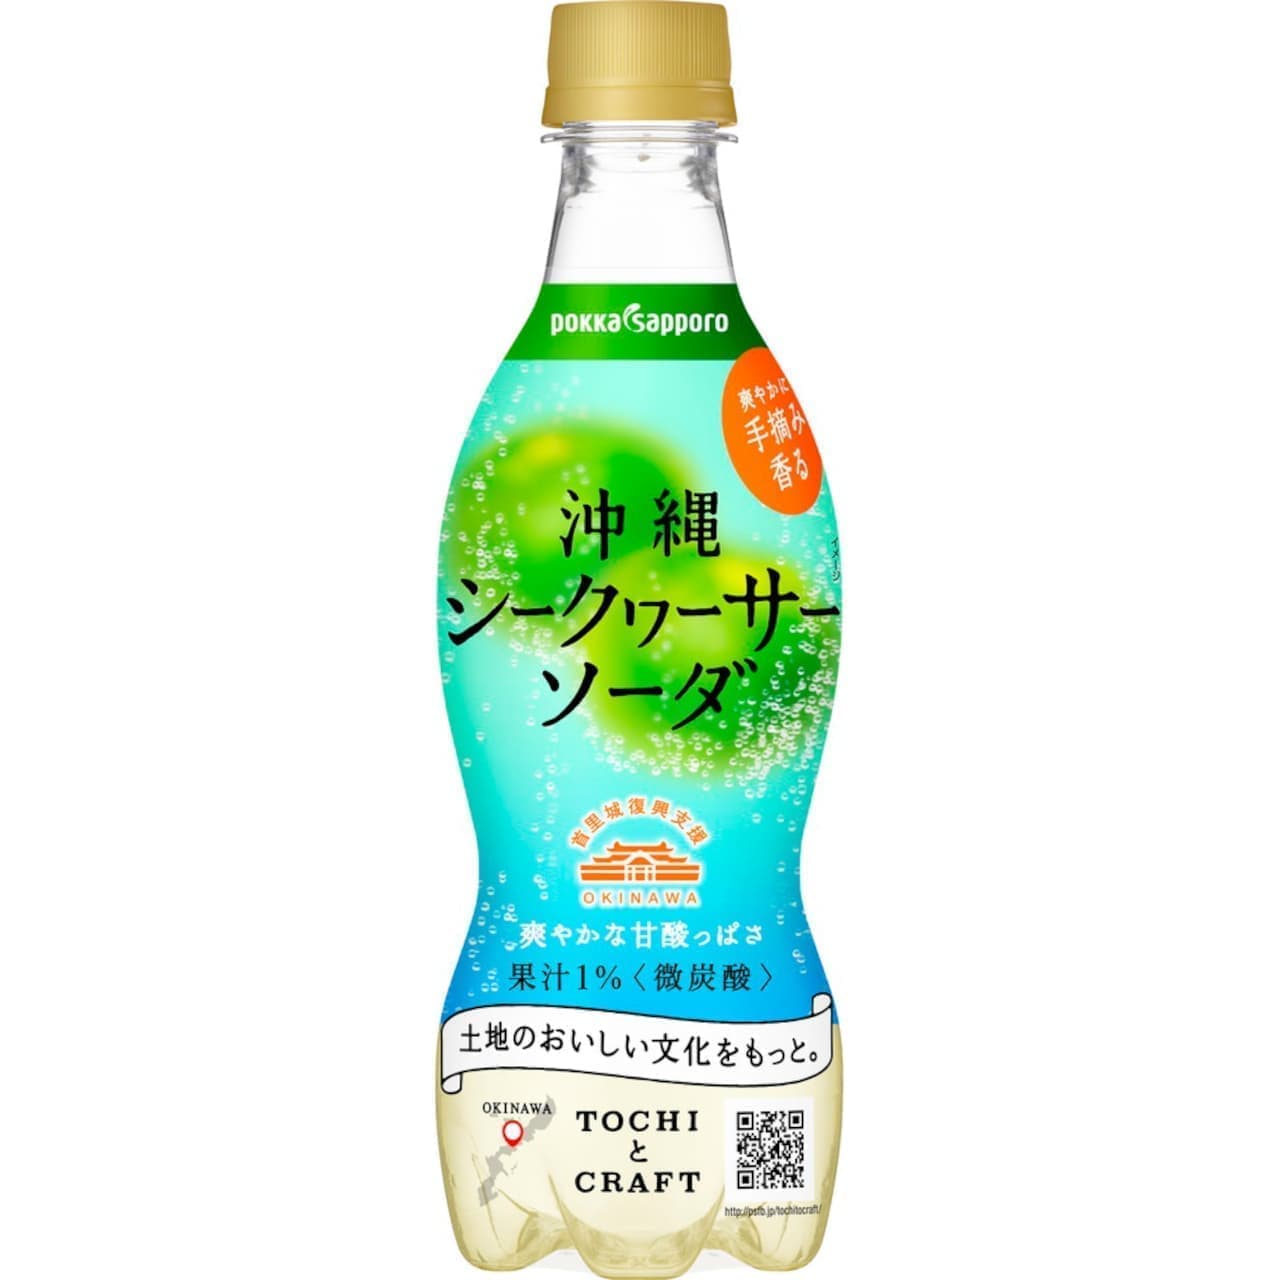 Pokka Sapporo "Okinawa Shikwasa Soda